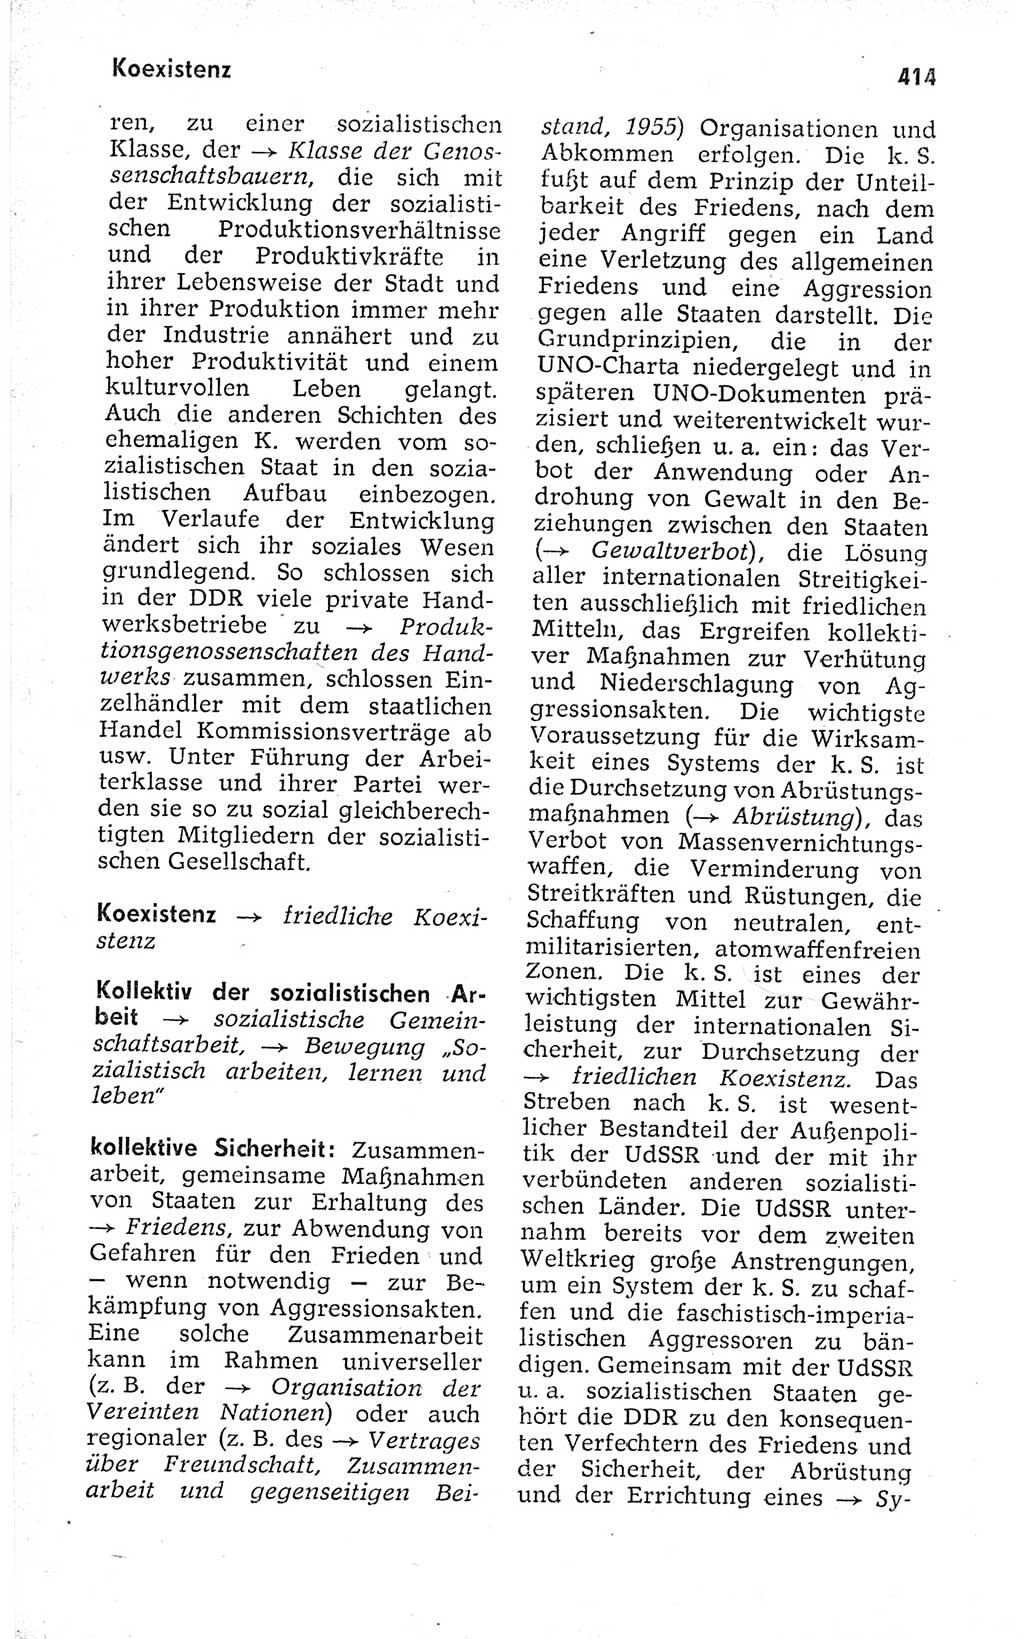 Kleines politisches Wörterbuch [Deutsche Demokratische Republik (DDR)] 1973, Seite 414 (Kl. pol. Wb. DDR 1973, S. 414)